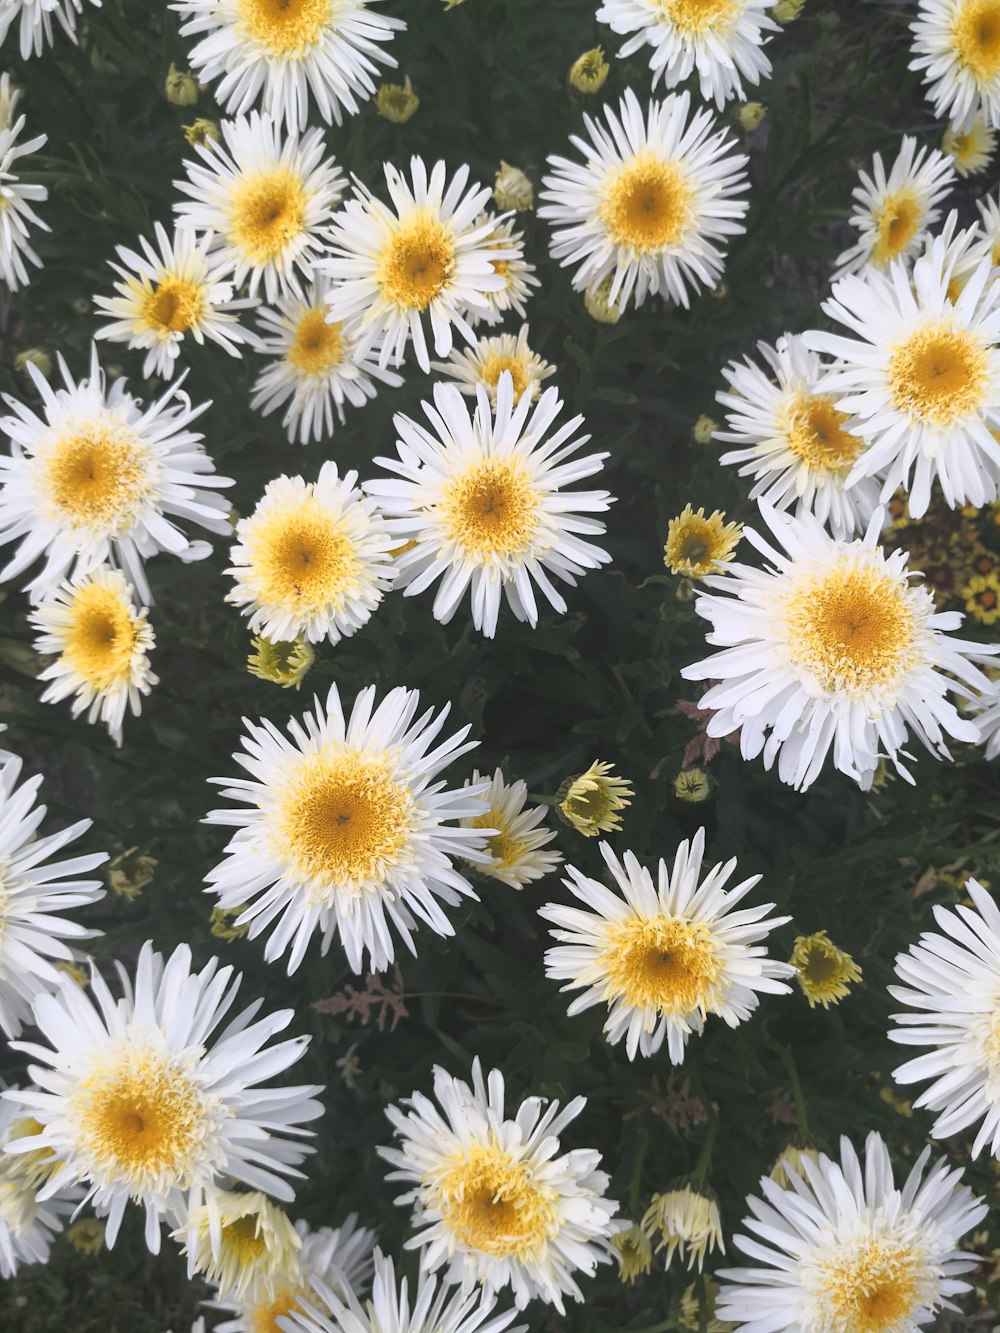 クローズアップ写真の白い花びらの花